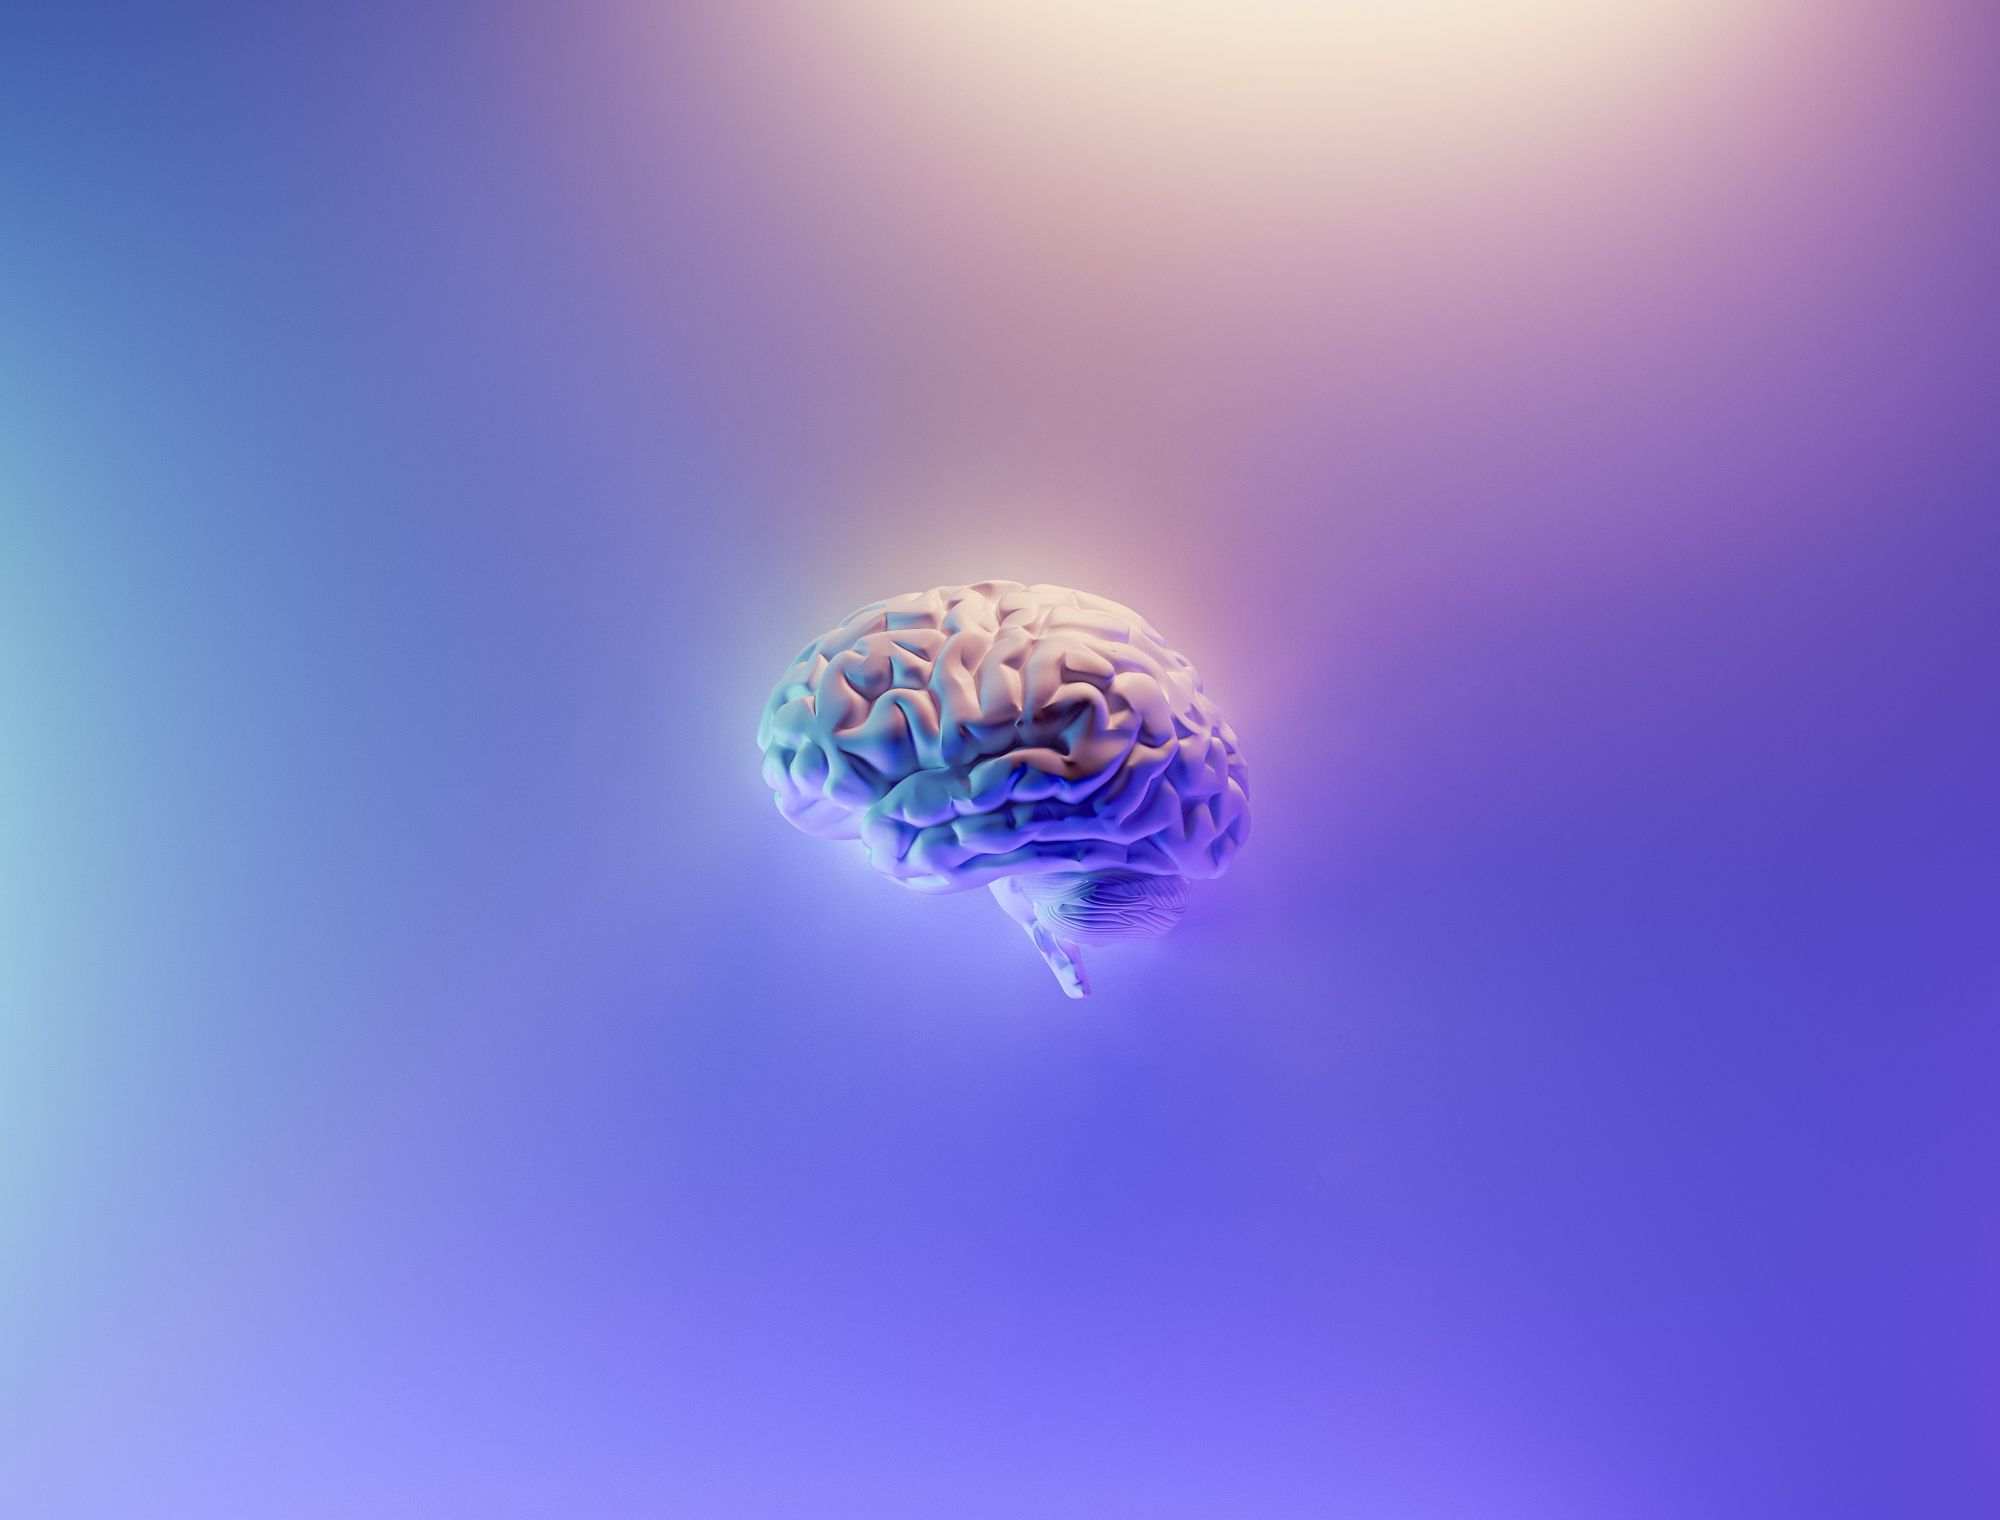 Επιστήμονες ανακάλυψαν μυστηριώδη σπειροειδή σήματα στον εγκέφαλο των ανθρώπων (βίντεο)